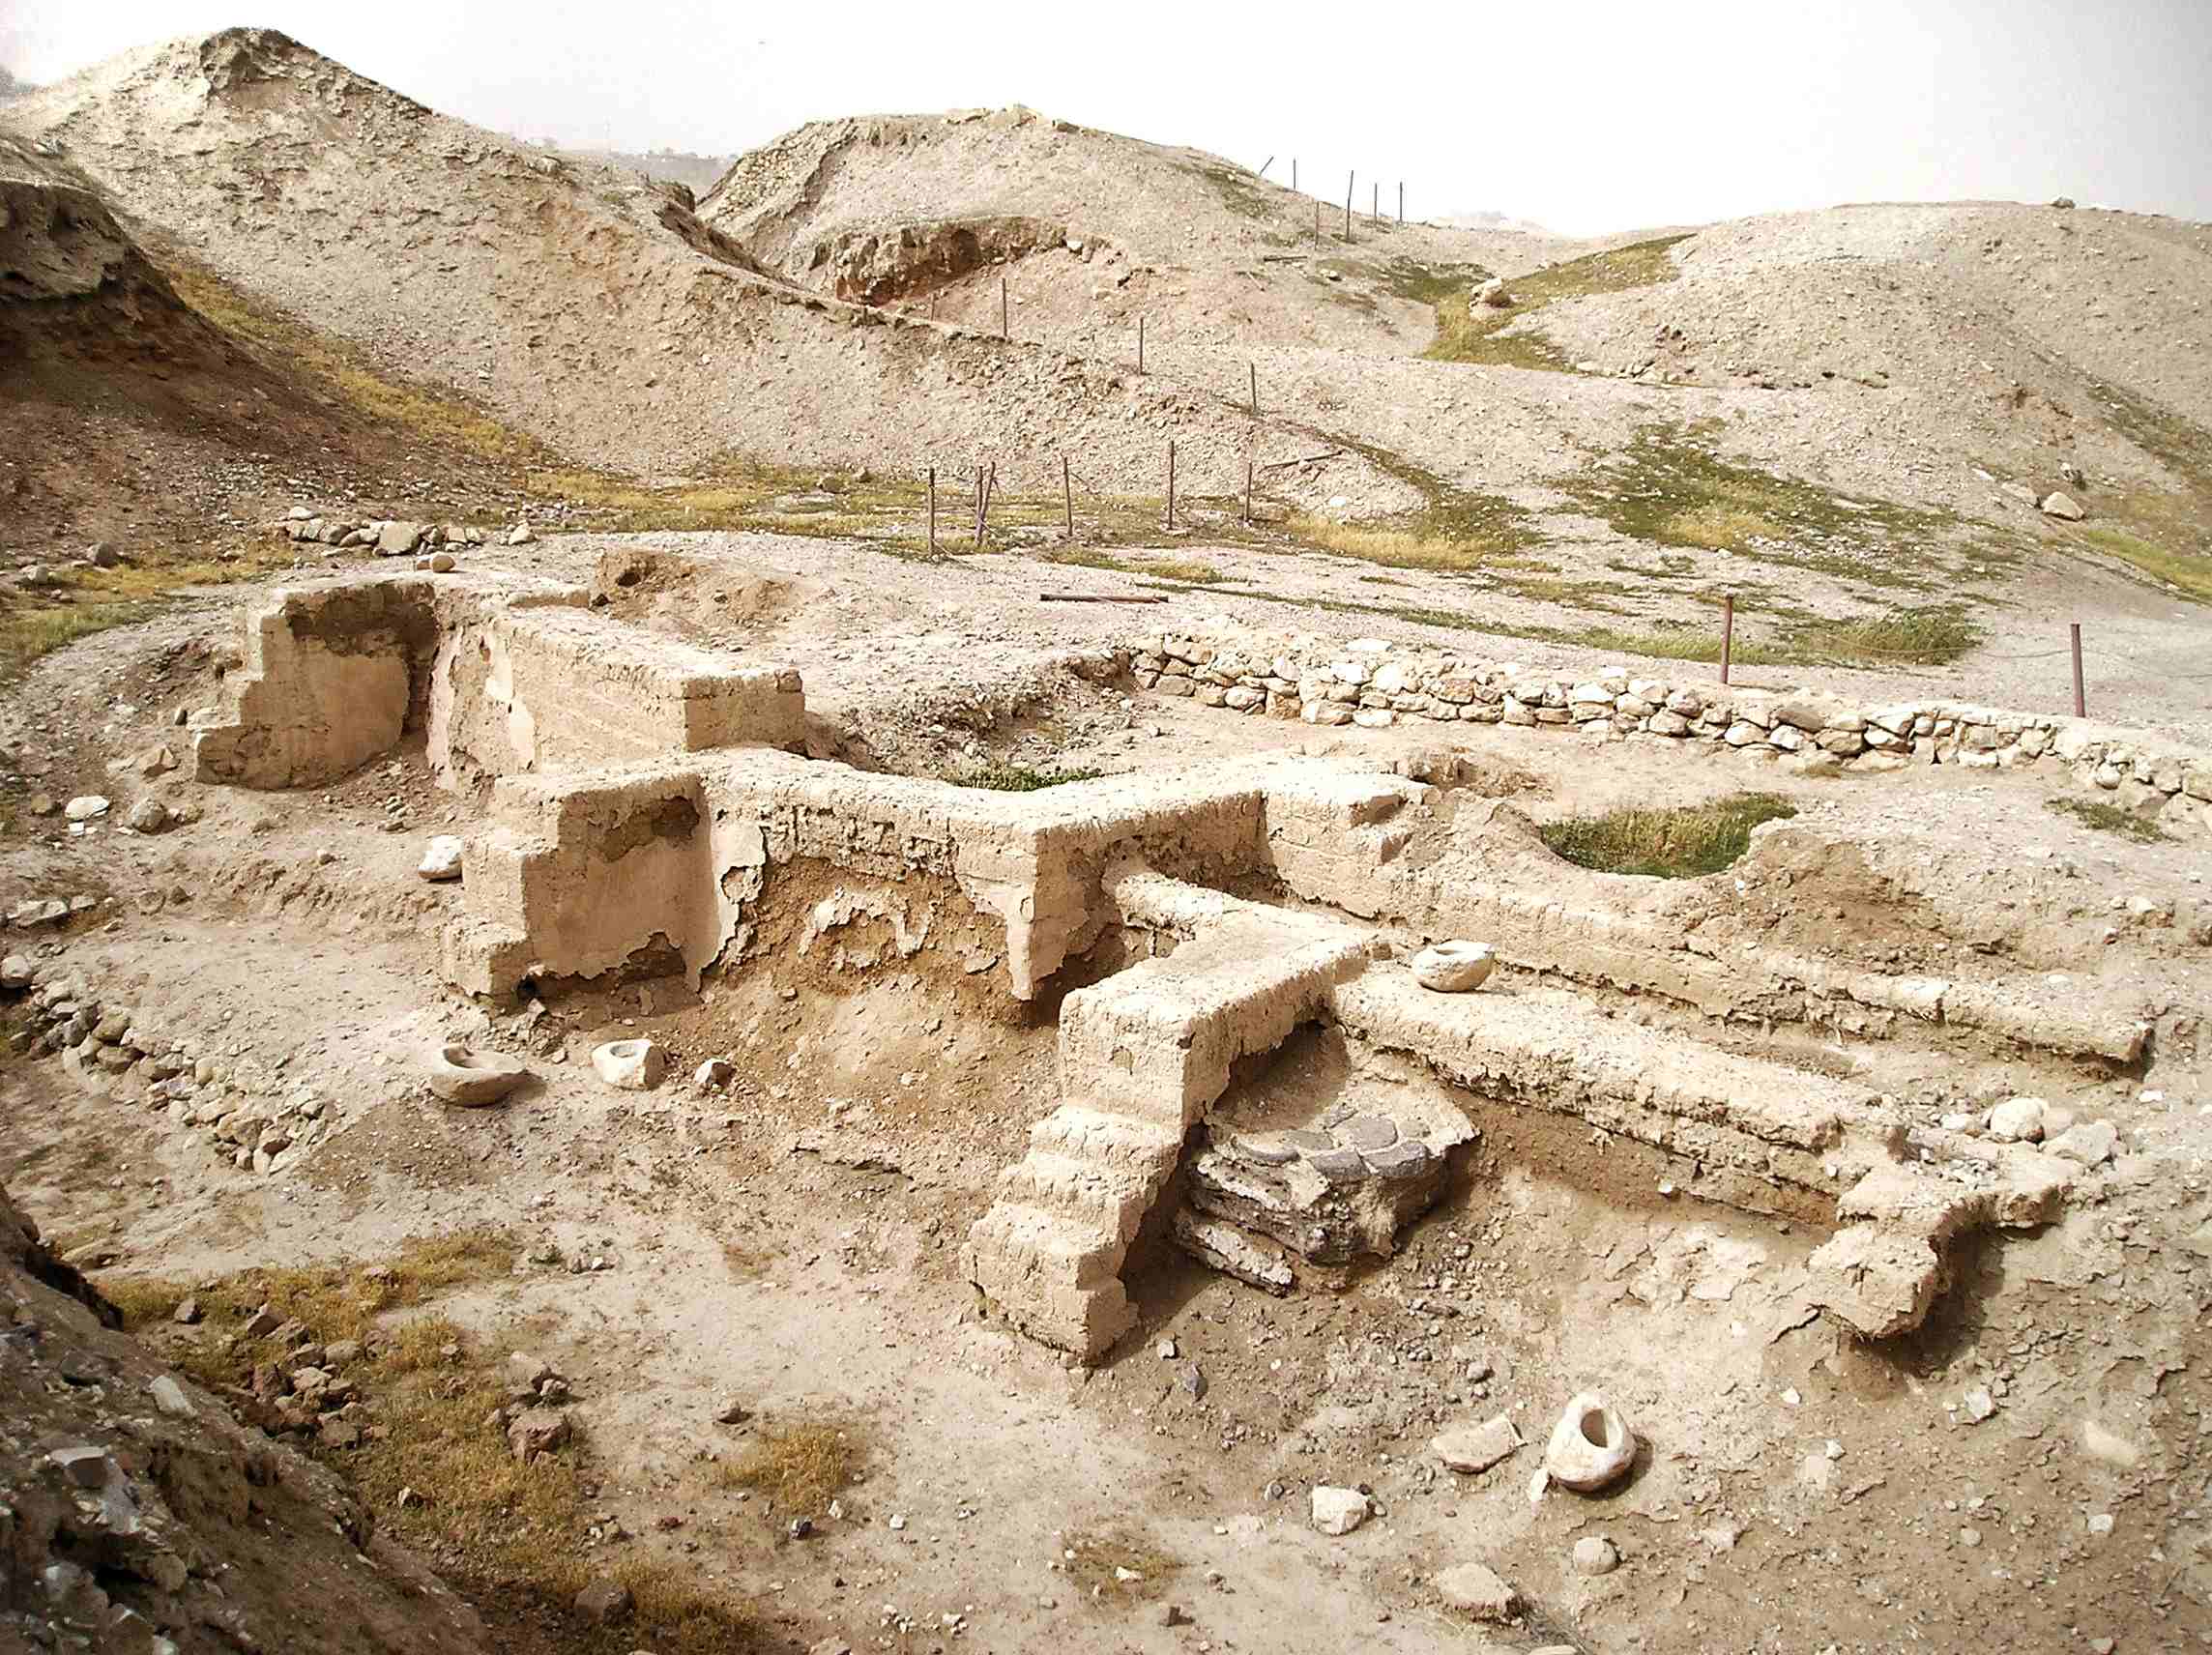 9,000 let staro najdišče v bližini Jeruzalema je "veliki pok" prazgodovinske naselbine 1